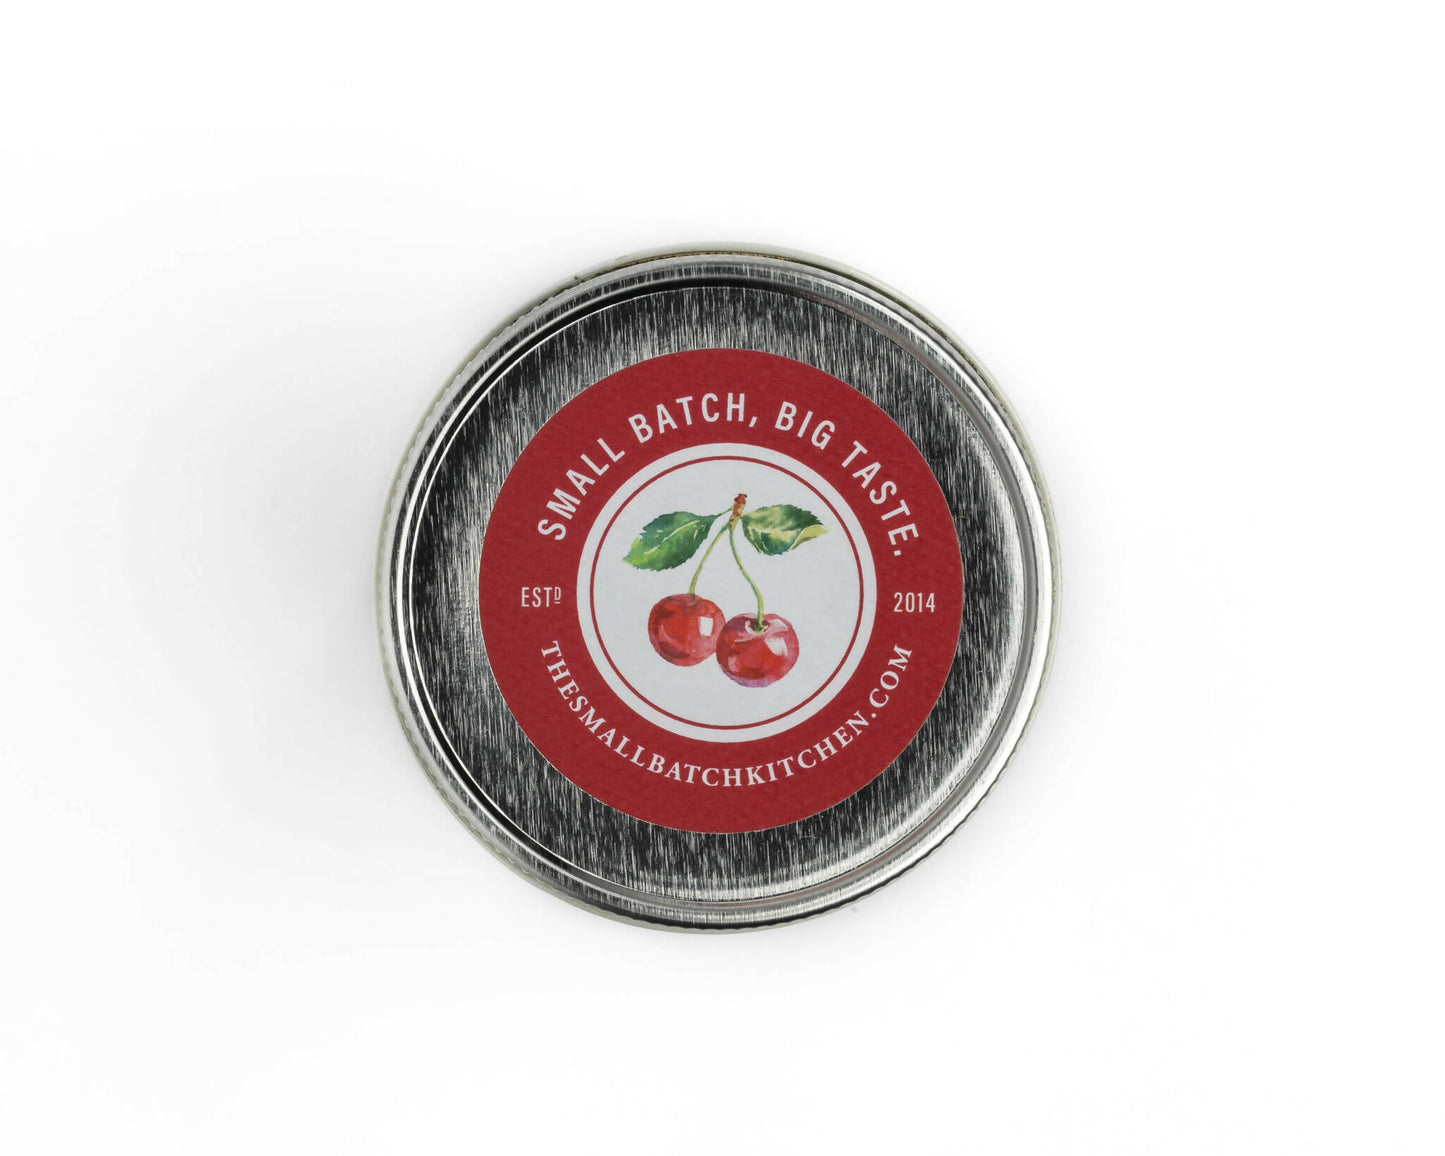 Small Batch Kitchen Sour Cherry Fruit Spread Jars - 6 jars x 8 oz by Farm2Me